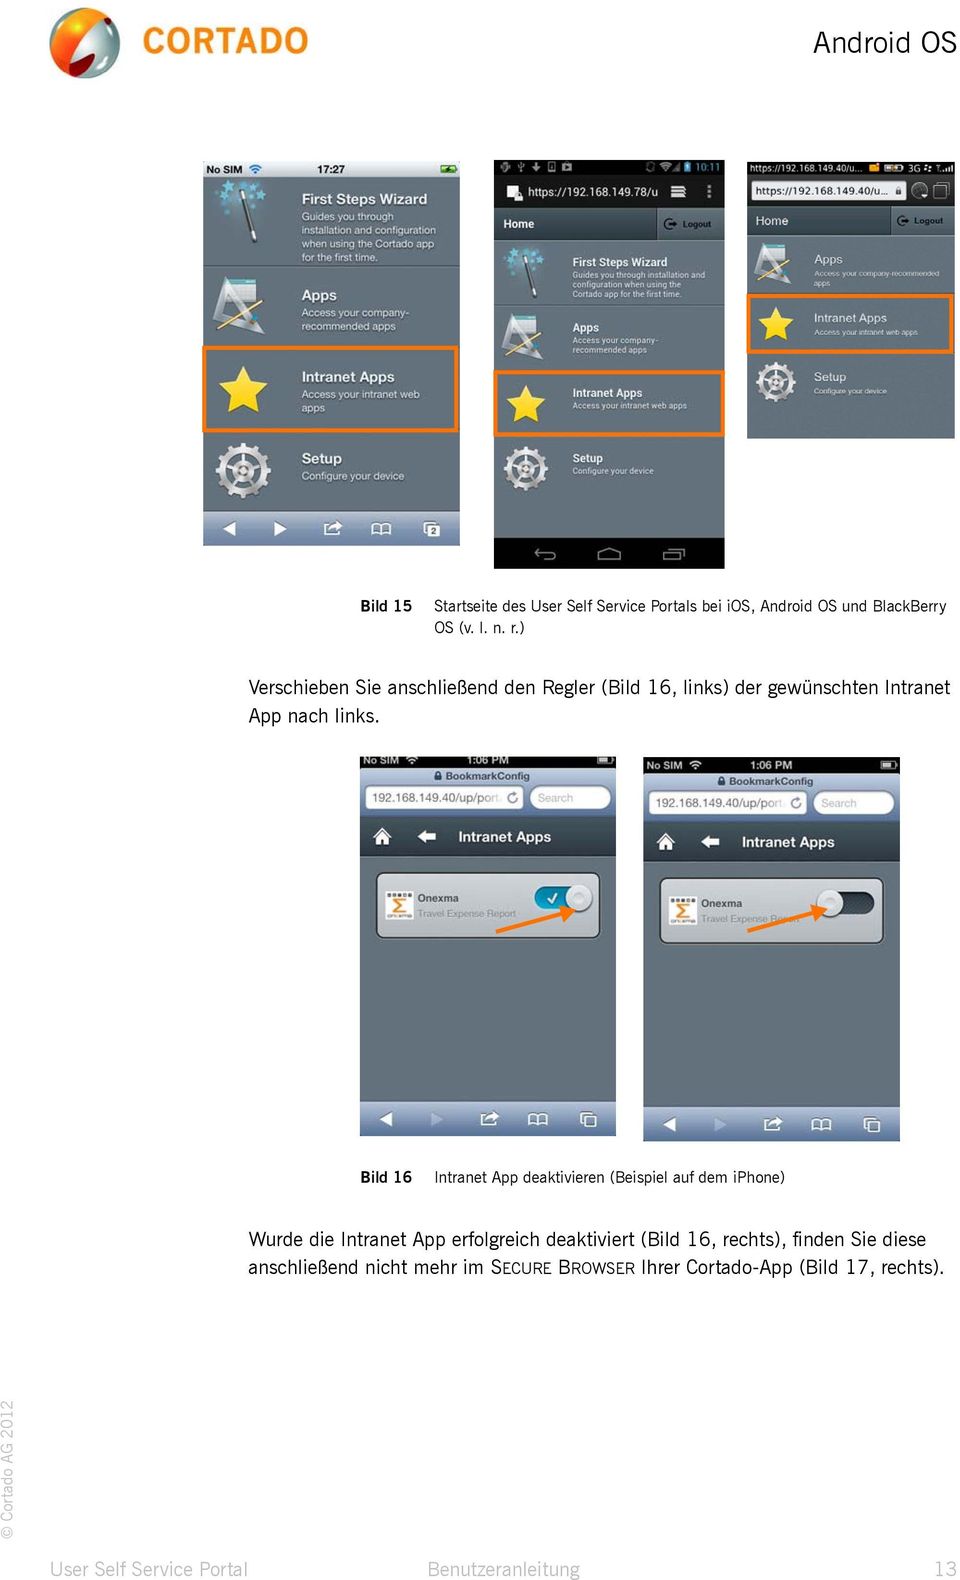 Bild 16 Bild 16 Intranet App deaktivieren (Beispiel auf dem iphone) Wurde die Intranet App erfolgreich deaktiviert (Bild